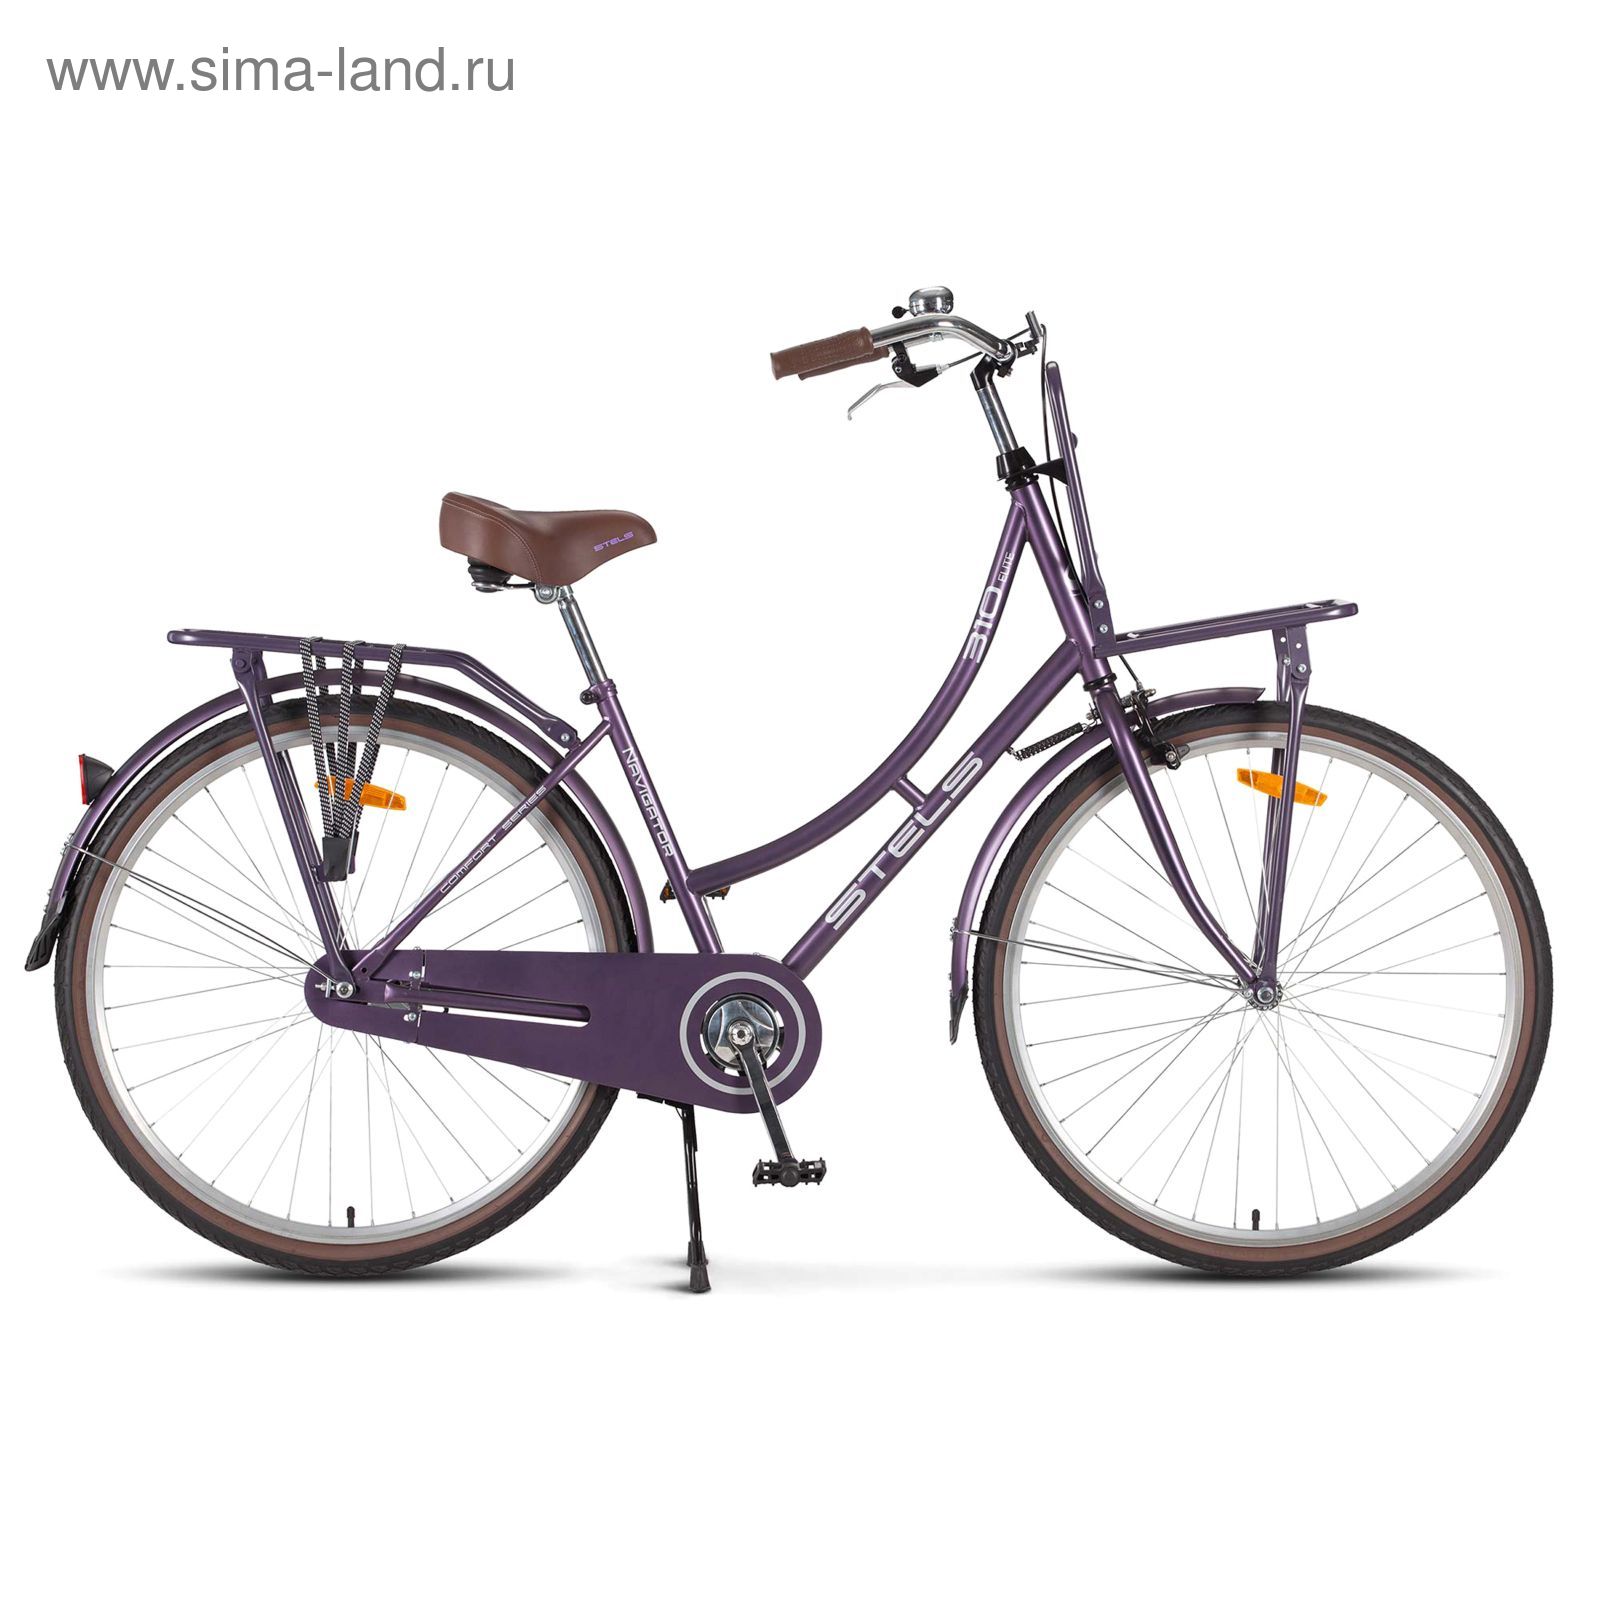 Велосипед 28" Stels Navigator-310 Lady, 2017, цвет фиолетовый, размер 18"